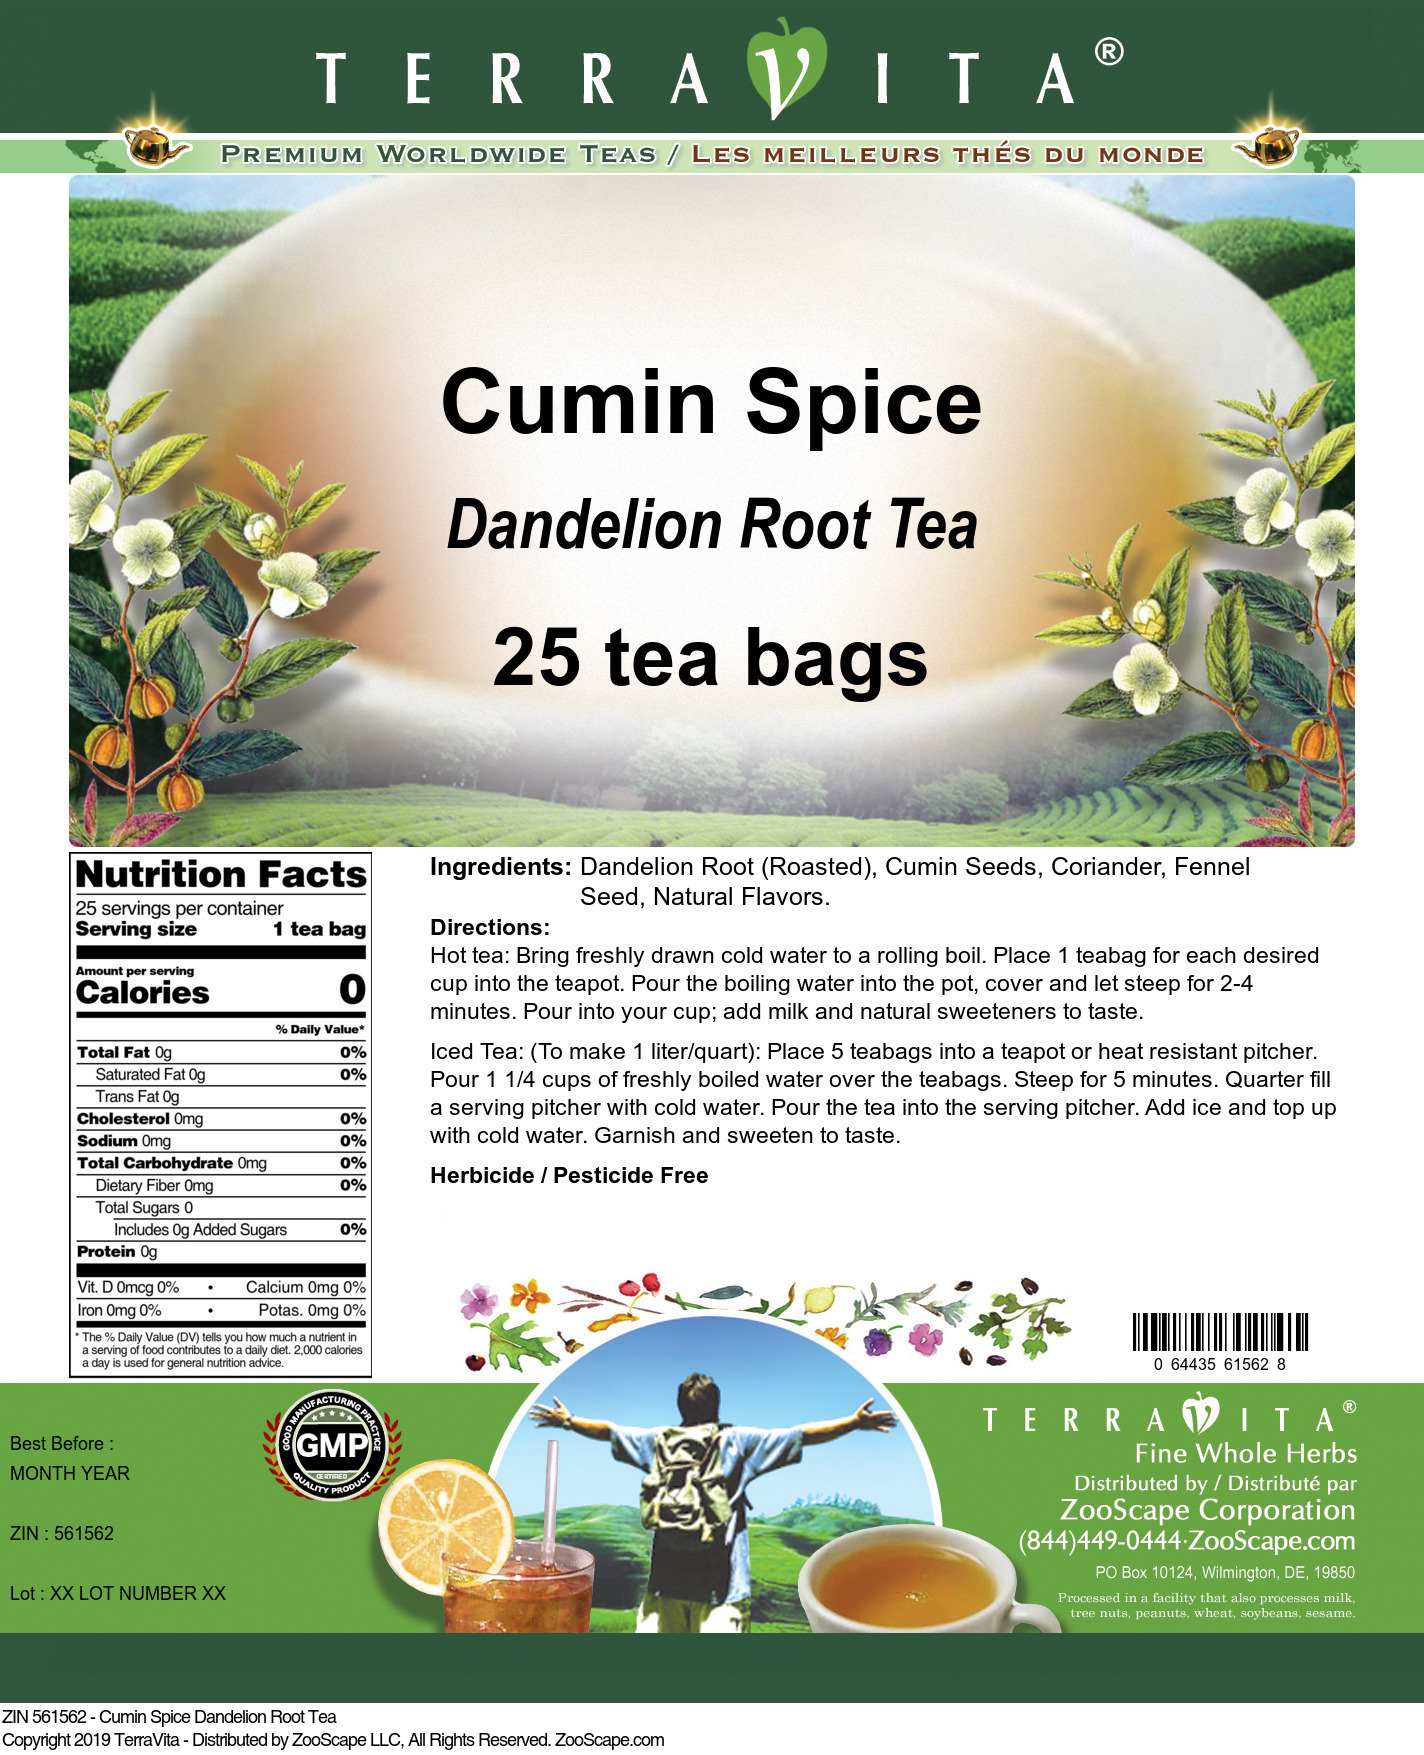 Cumin Spice Dandelion Root Tea - Label